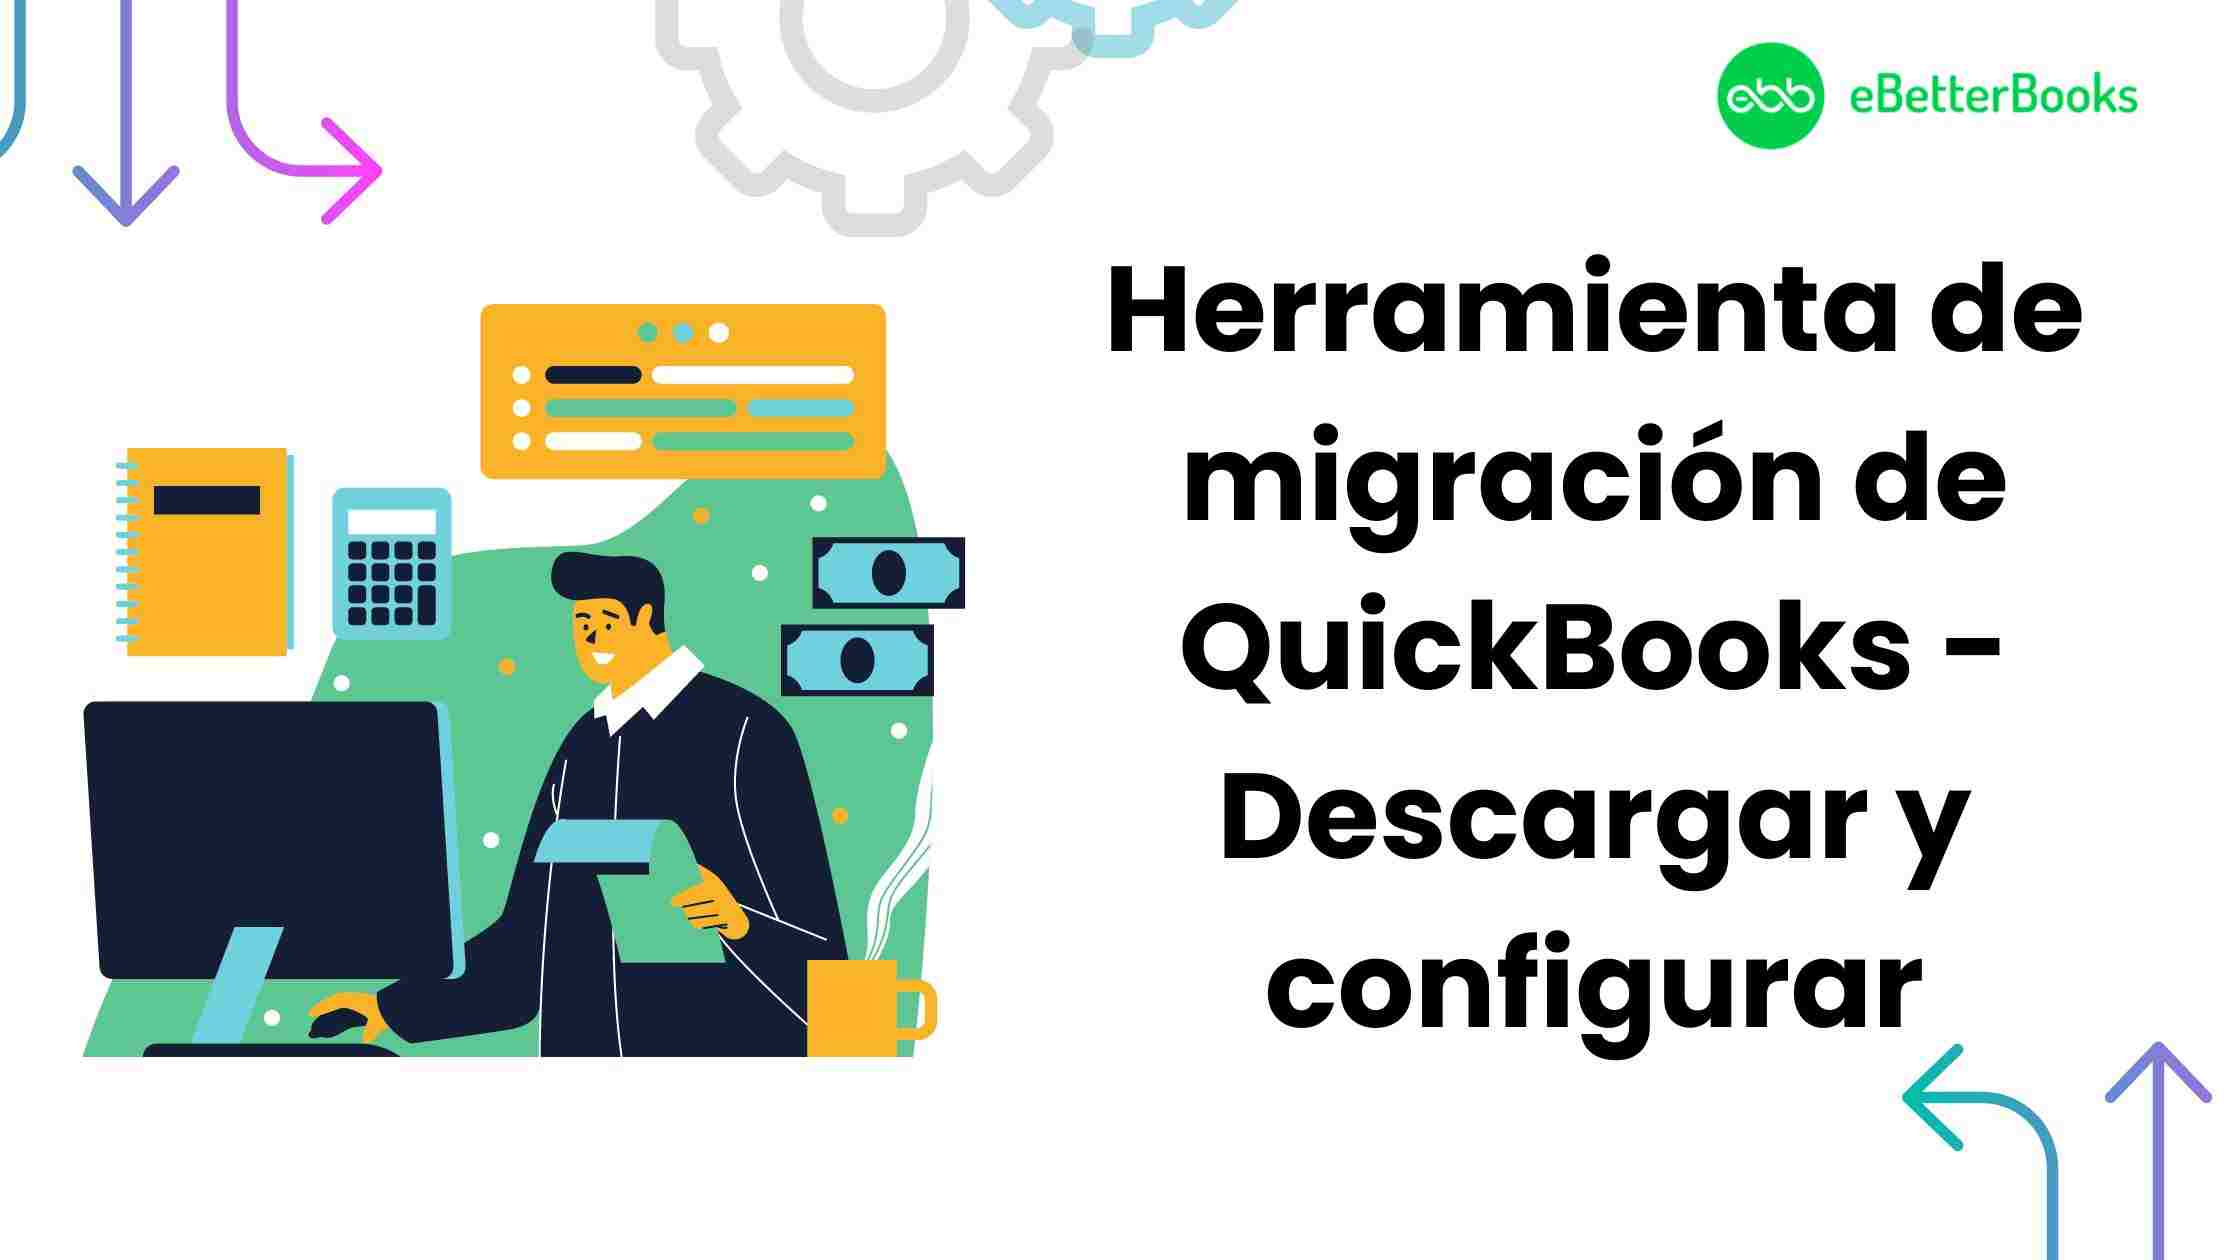 Herramienta de migración de QuickBooks - Descargar y configurar